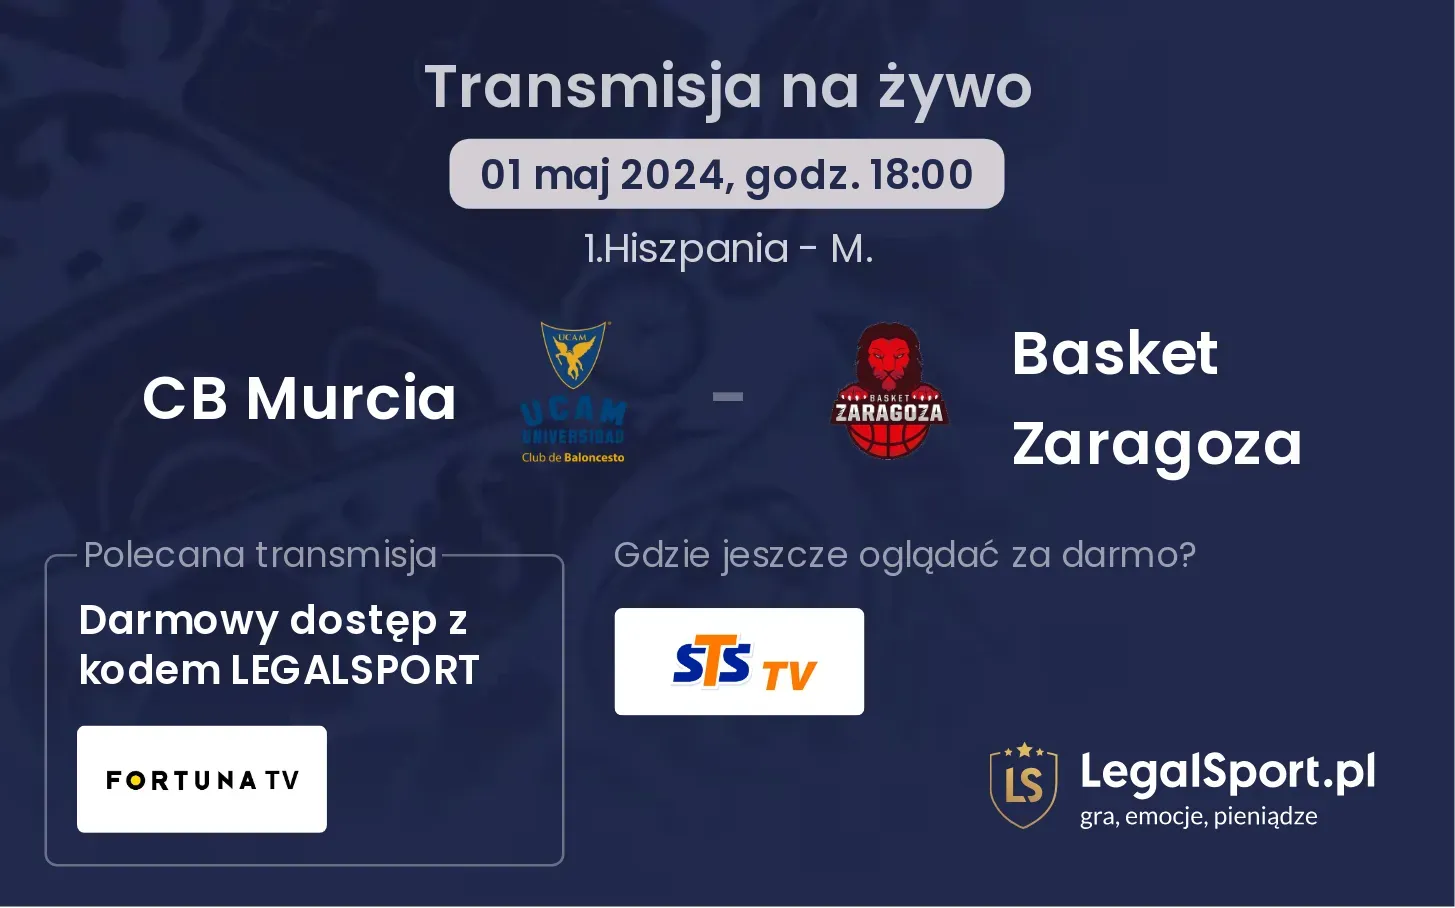 CB Murcia - Basket Zaragoza transmisja na żywo